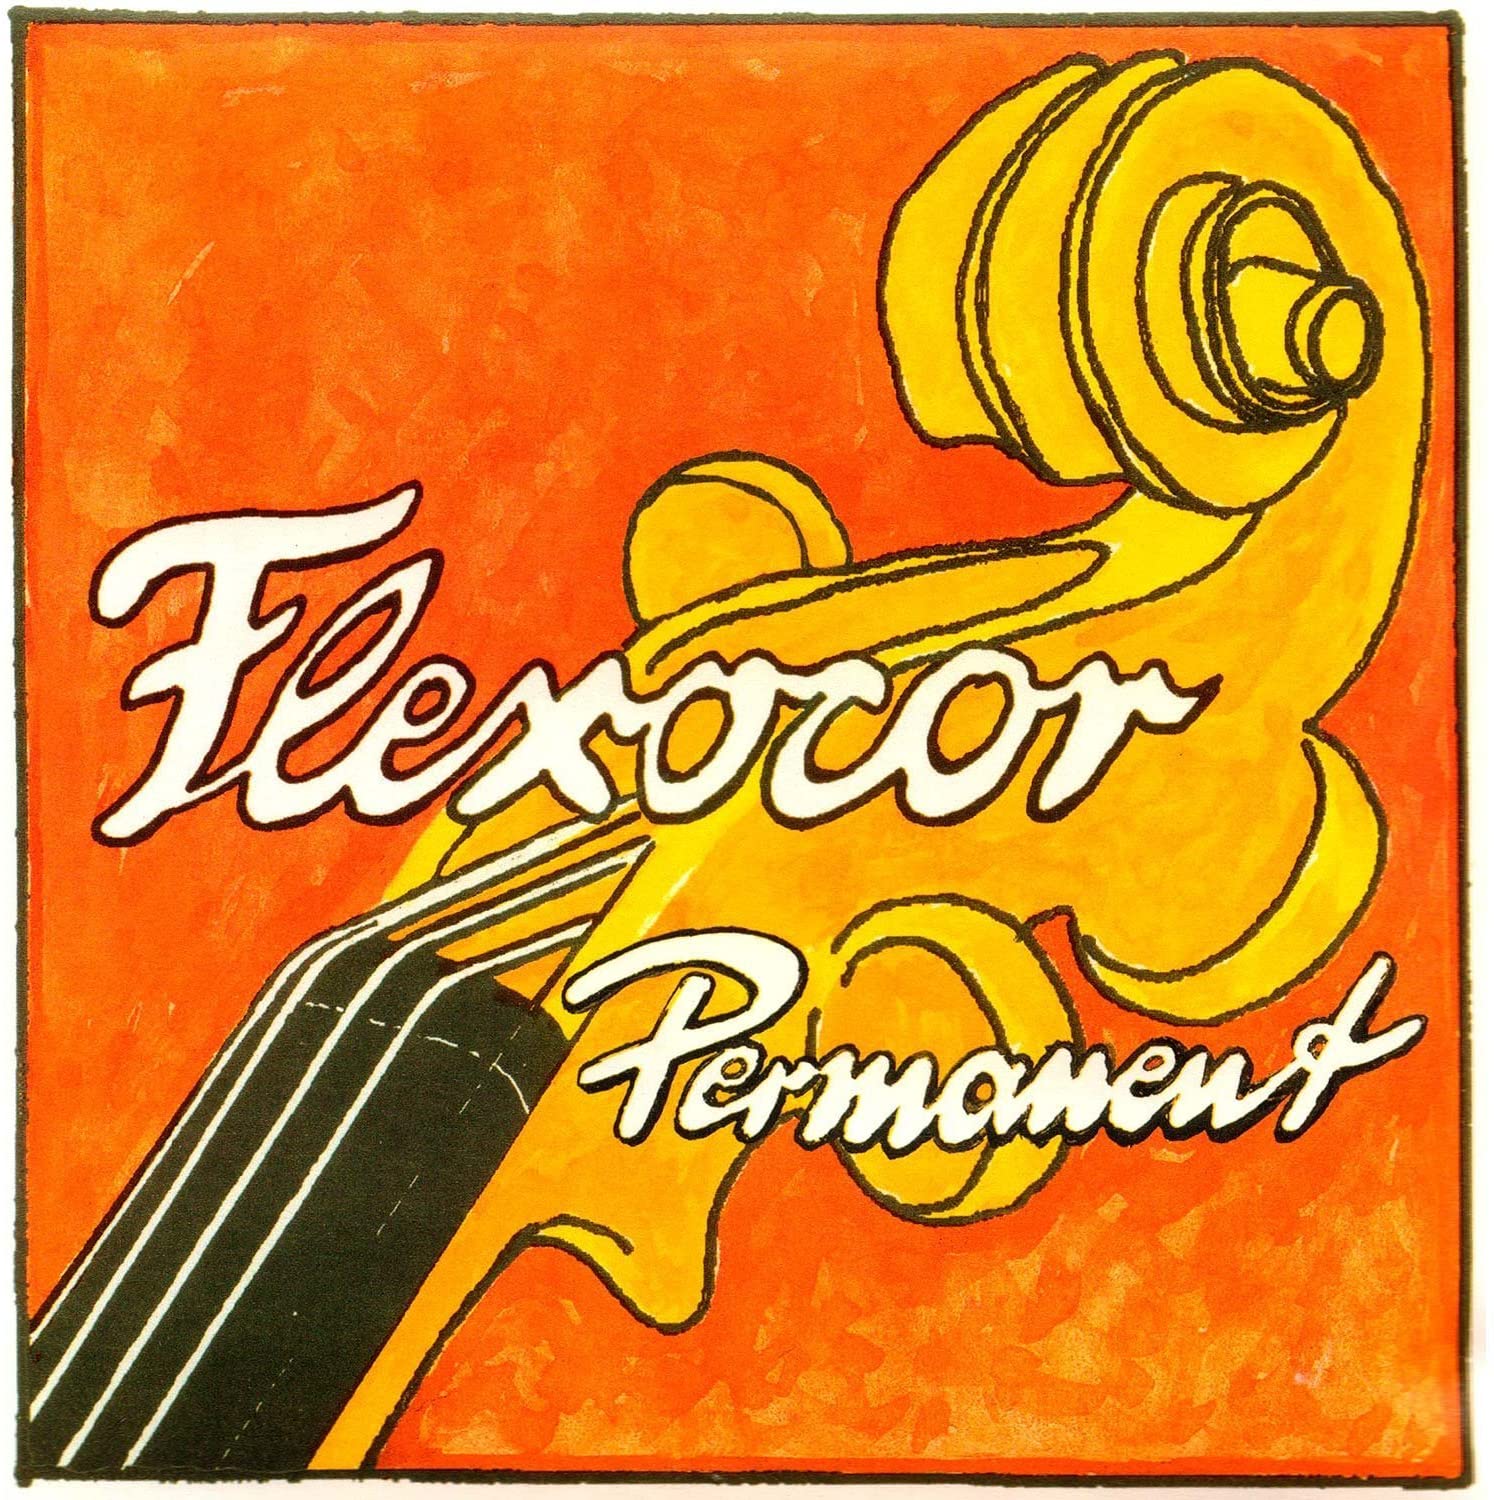 Pirastro Flexocor Permanent Violin D String